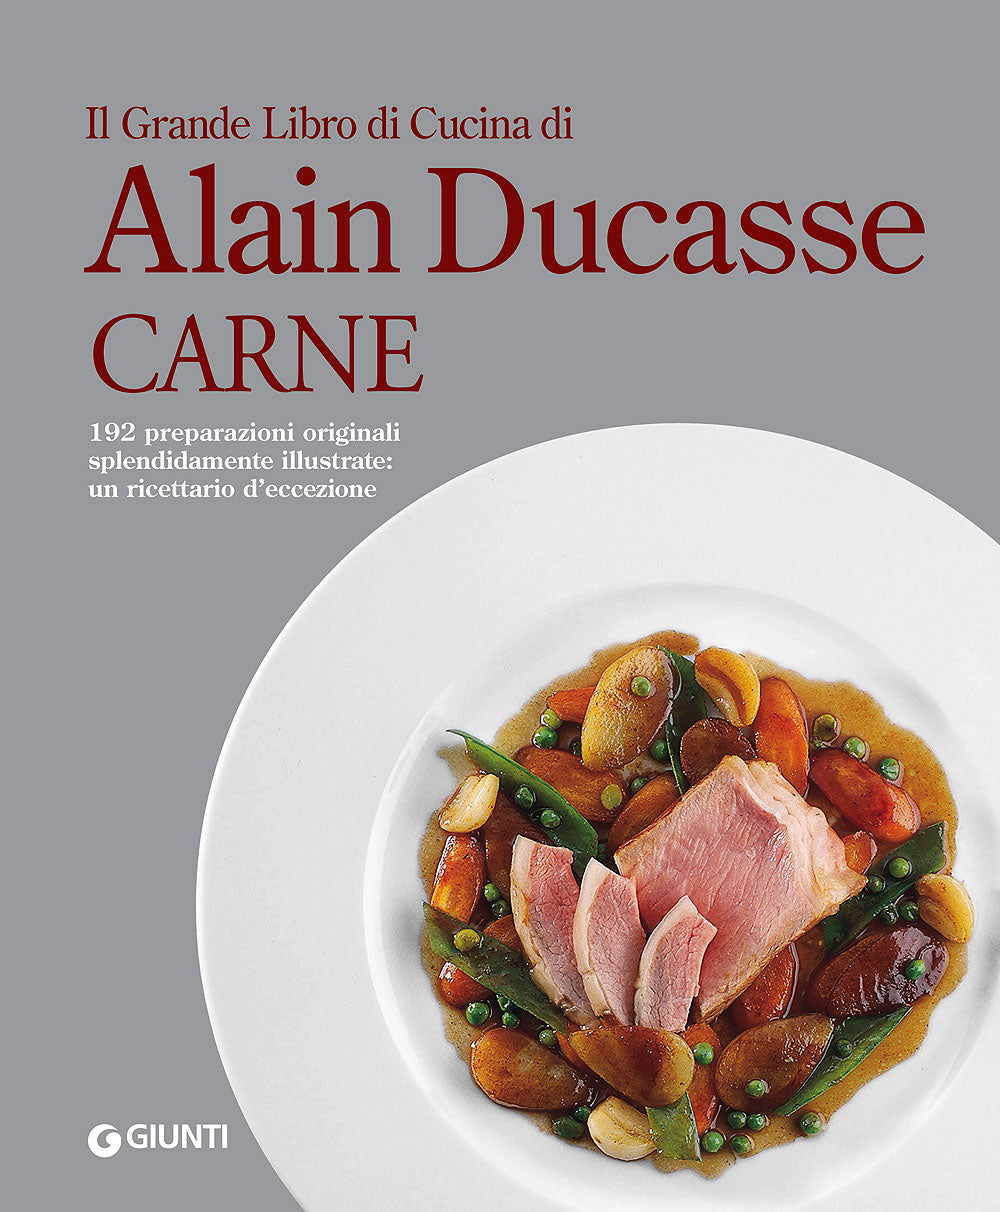 Il Grande Libro di Cucina di Alain Ducasse. Carne. 192 preparazioni originali splendidamente illustrate: un ricettario d'eccezione